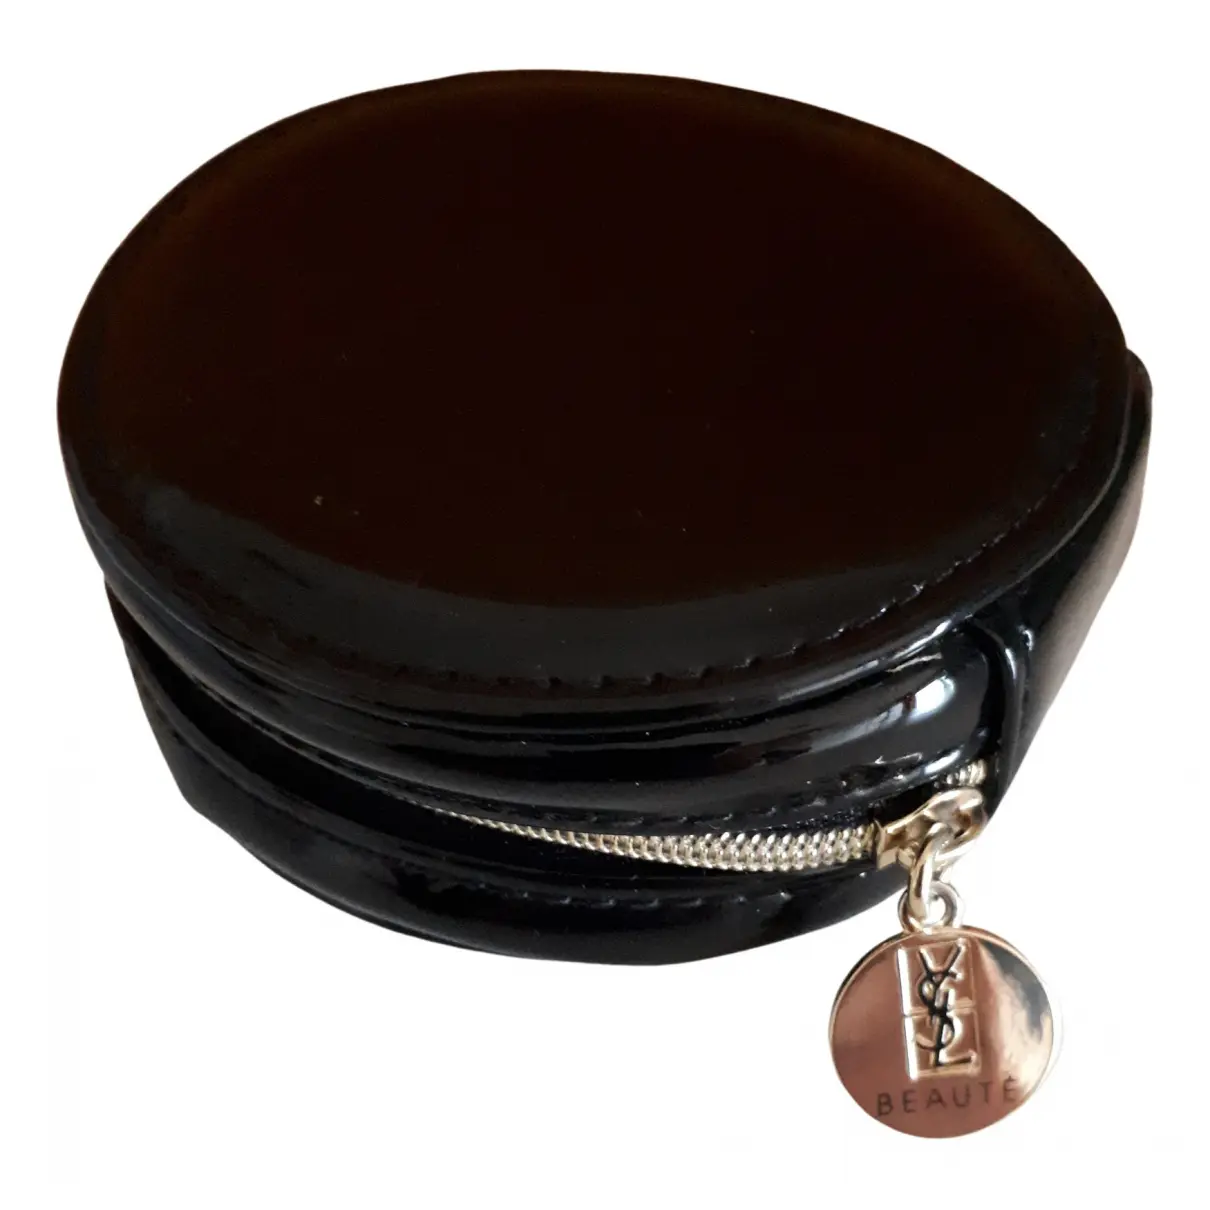 Patent leather purse Yves Saint Laurent